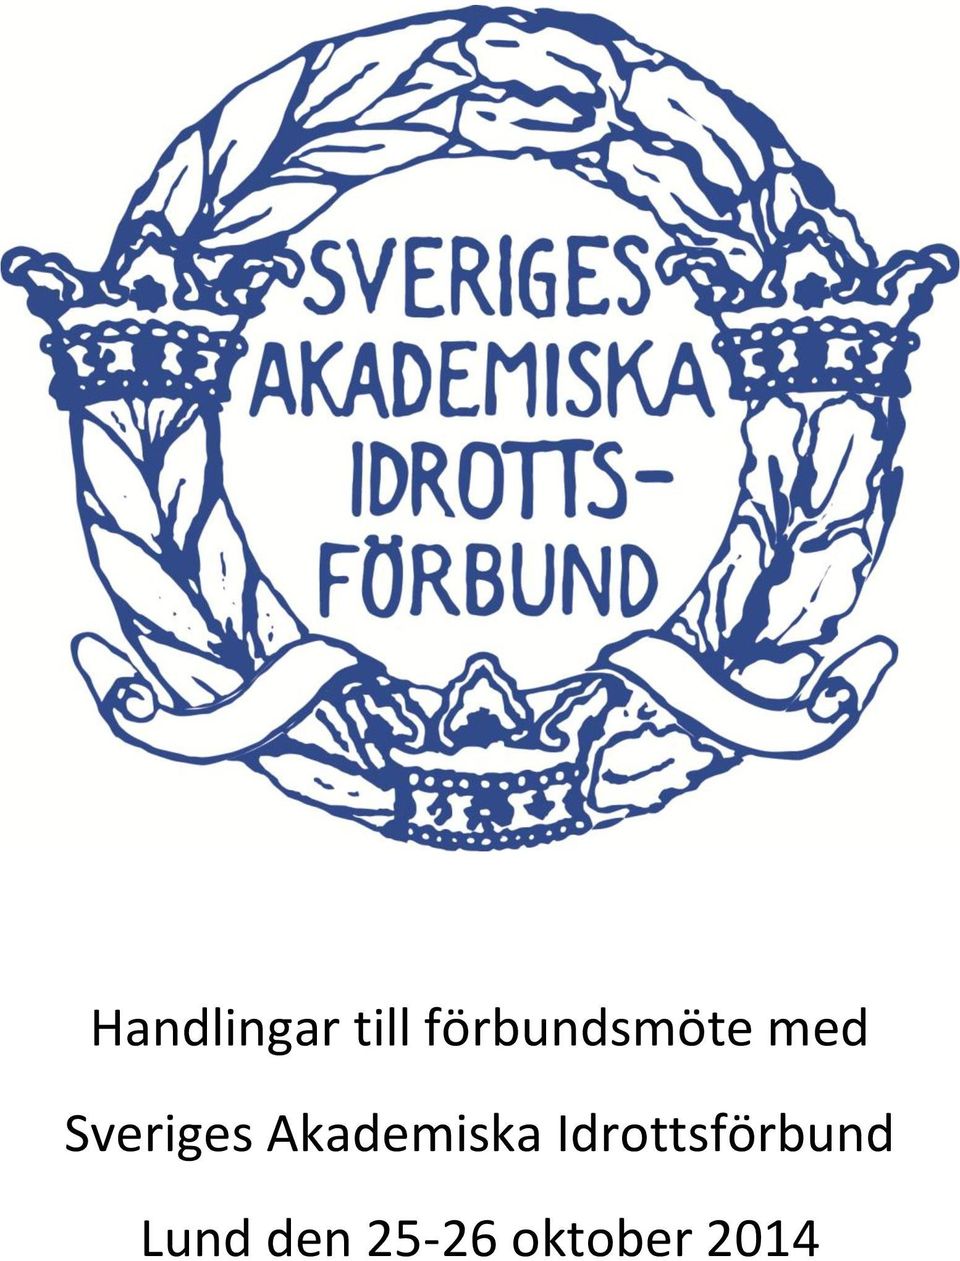 Sveriges Akademiska